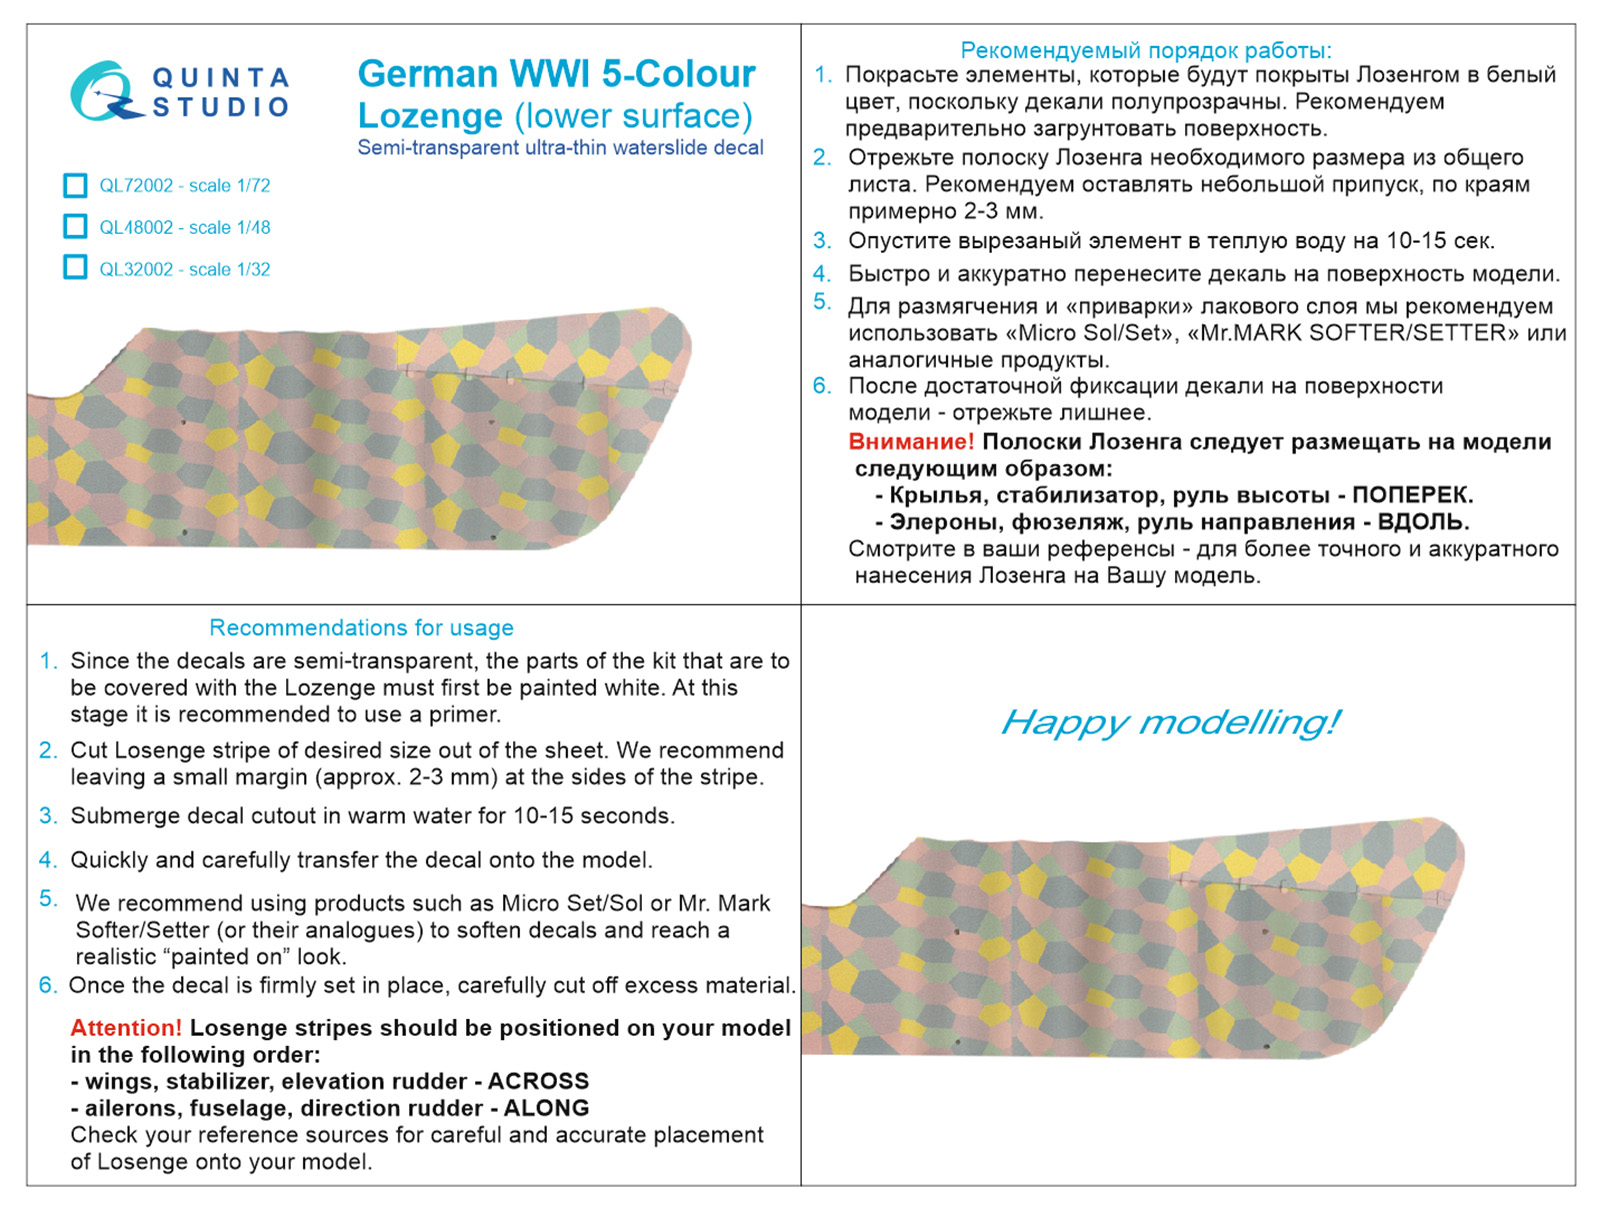 German WWI 5-Colour Lozenge (lower surface)